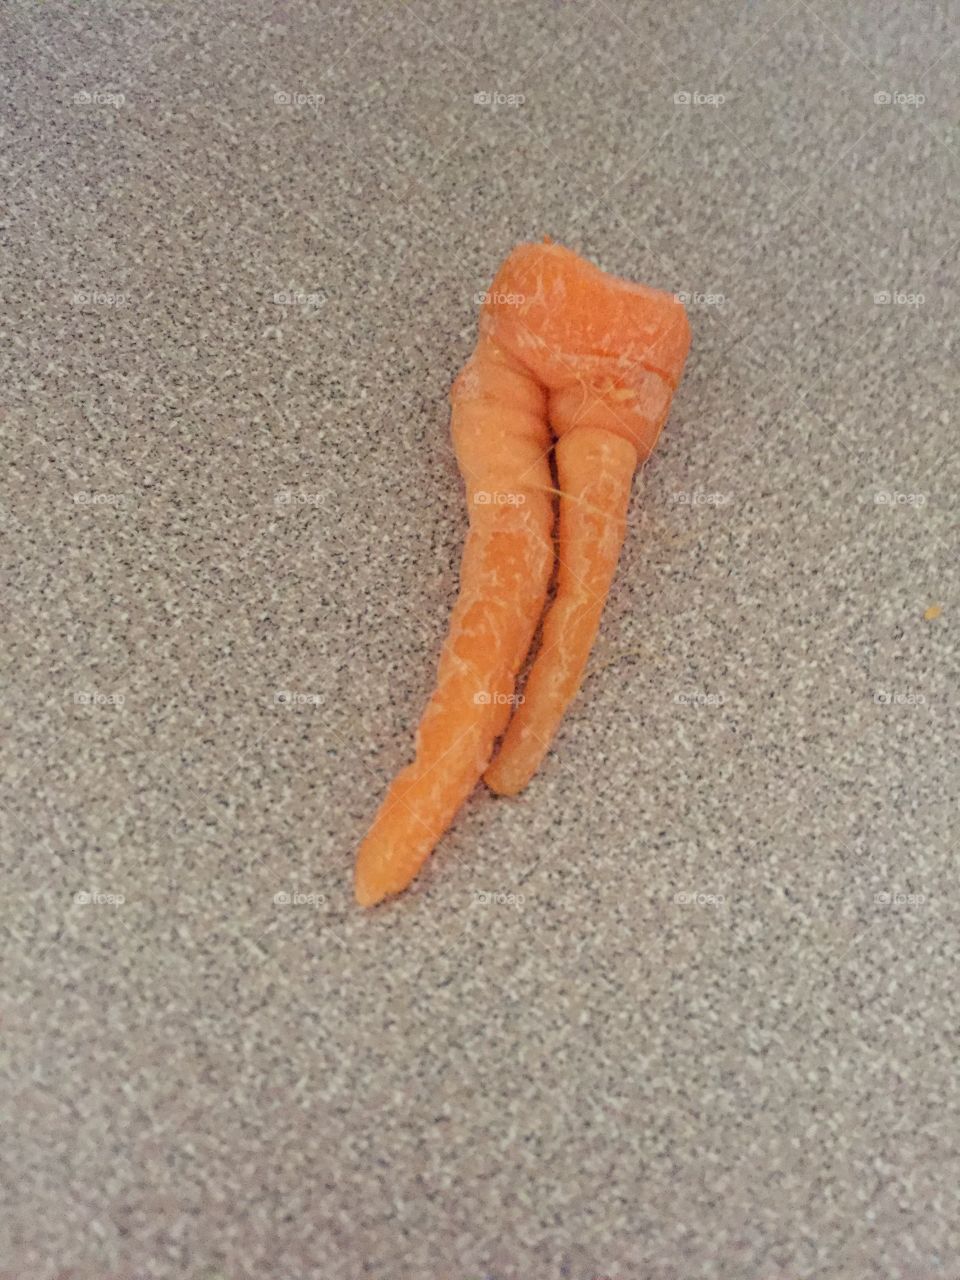 Carrot legs